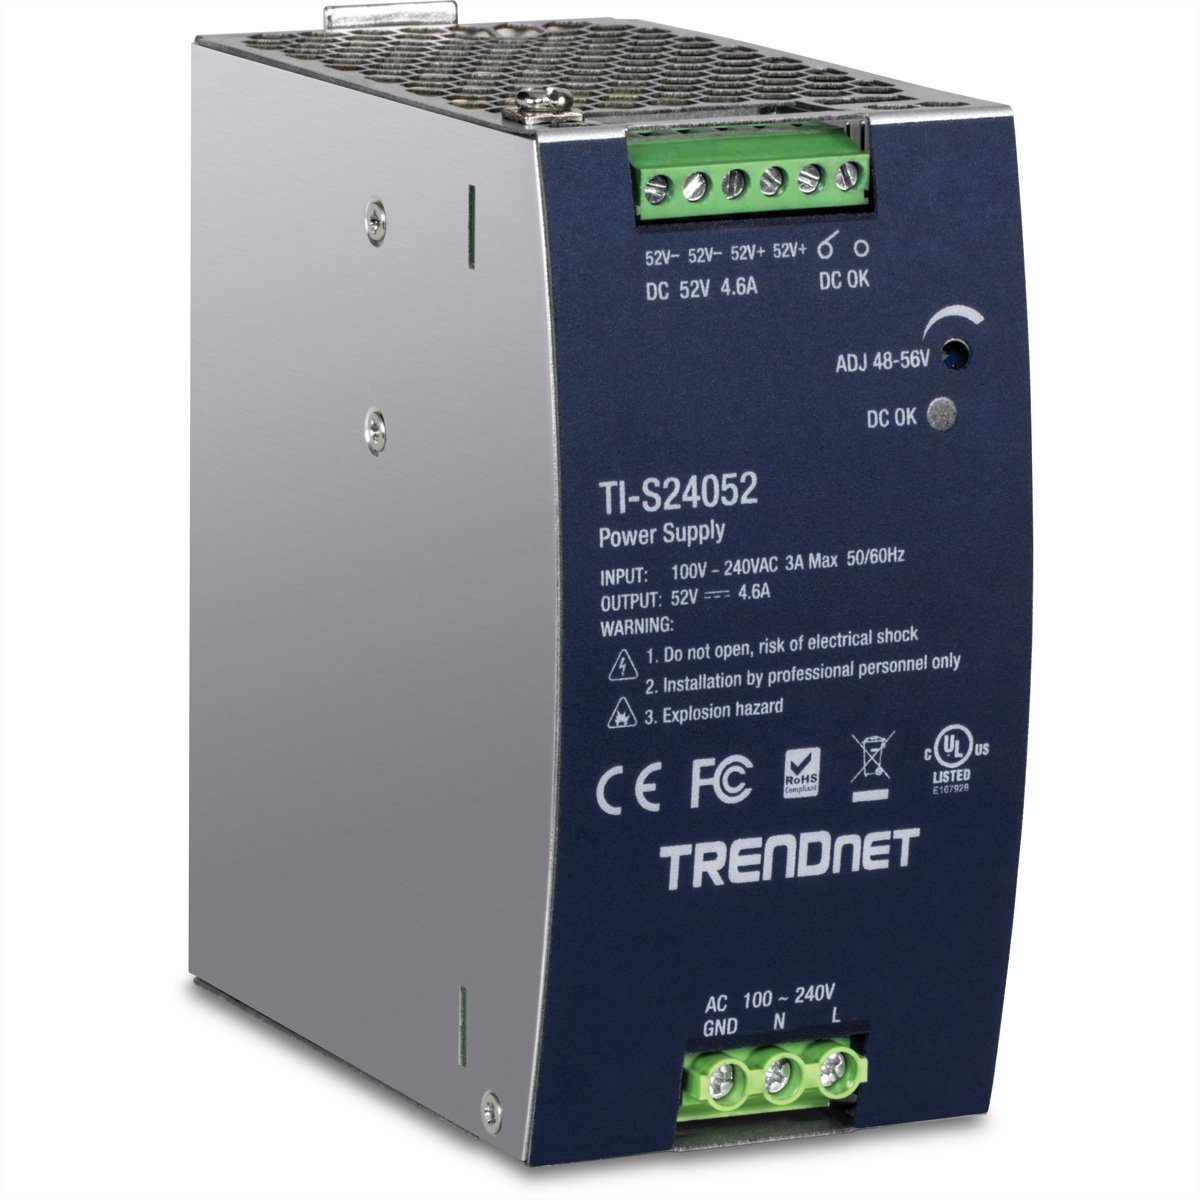 Trendnet TI-S24052 DIN-Rail Power Supply Netzwerk-Switch (240W, 52V DC, 4.61A AC zu DC mit PFC)